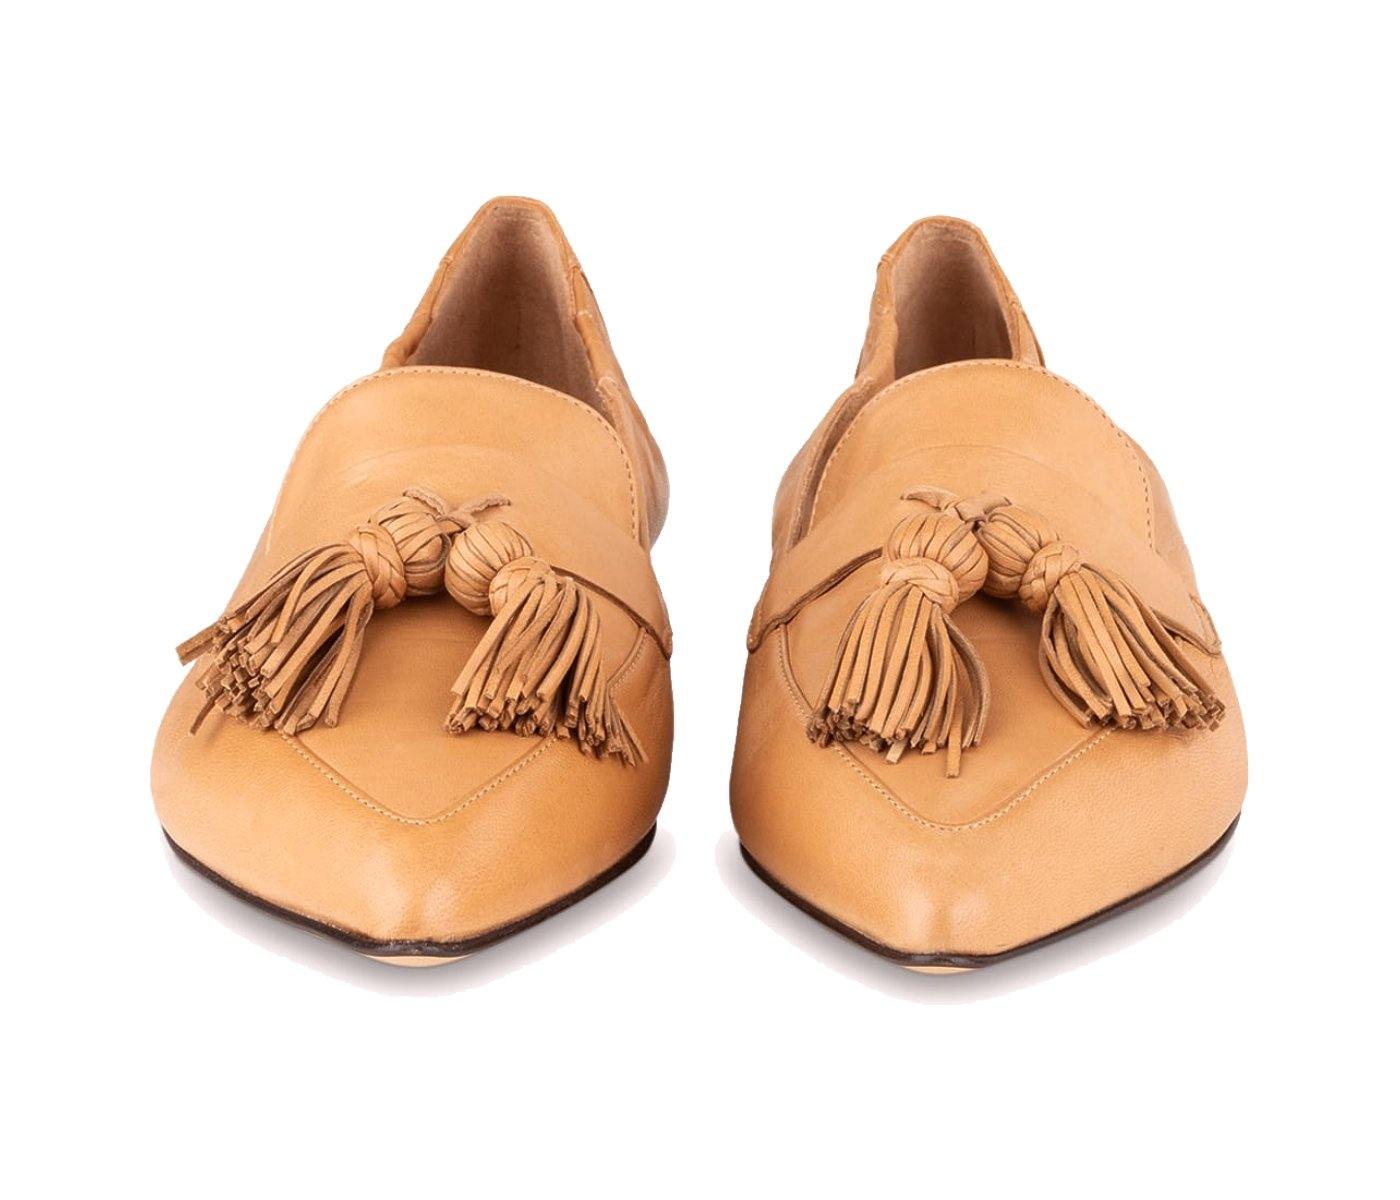 Pomme D'or online shop. Pomme D'or Mokassin Grace in modischen camel. Edle Loafer in weicher Glove Lederqualität aus der neuen Pomme D'or Kollektion.